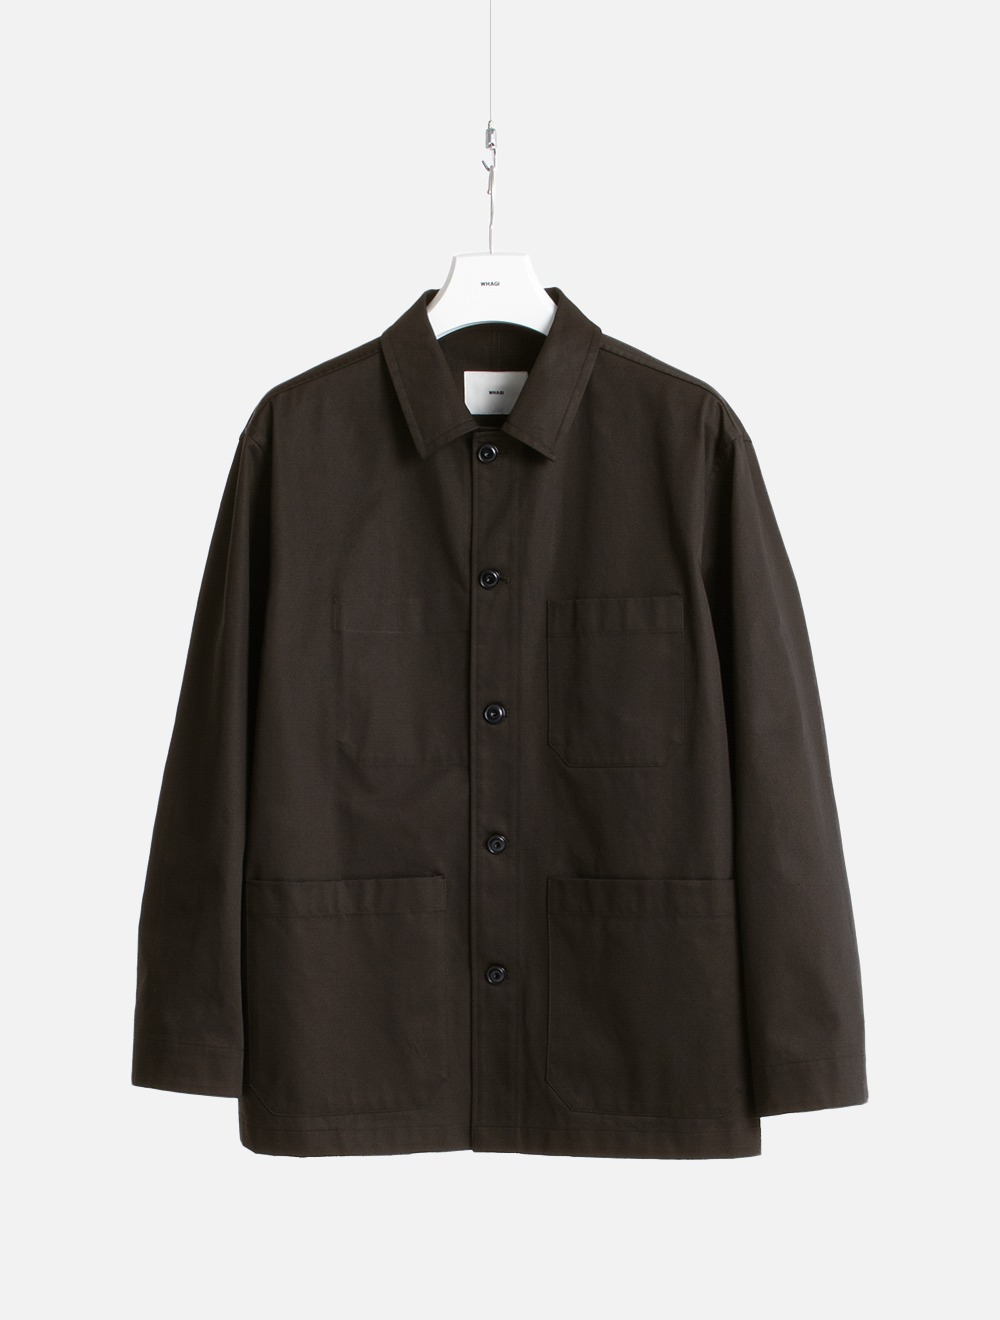 Work Jacket (Dark Brown)